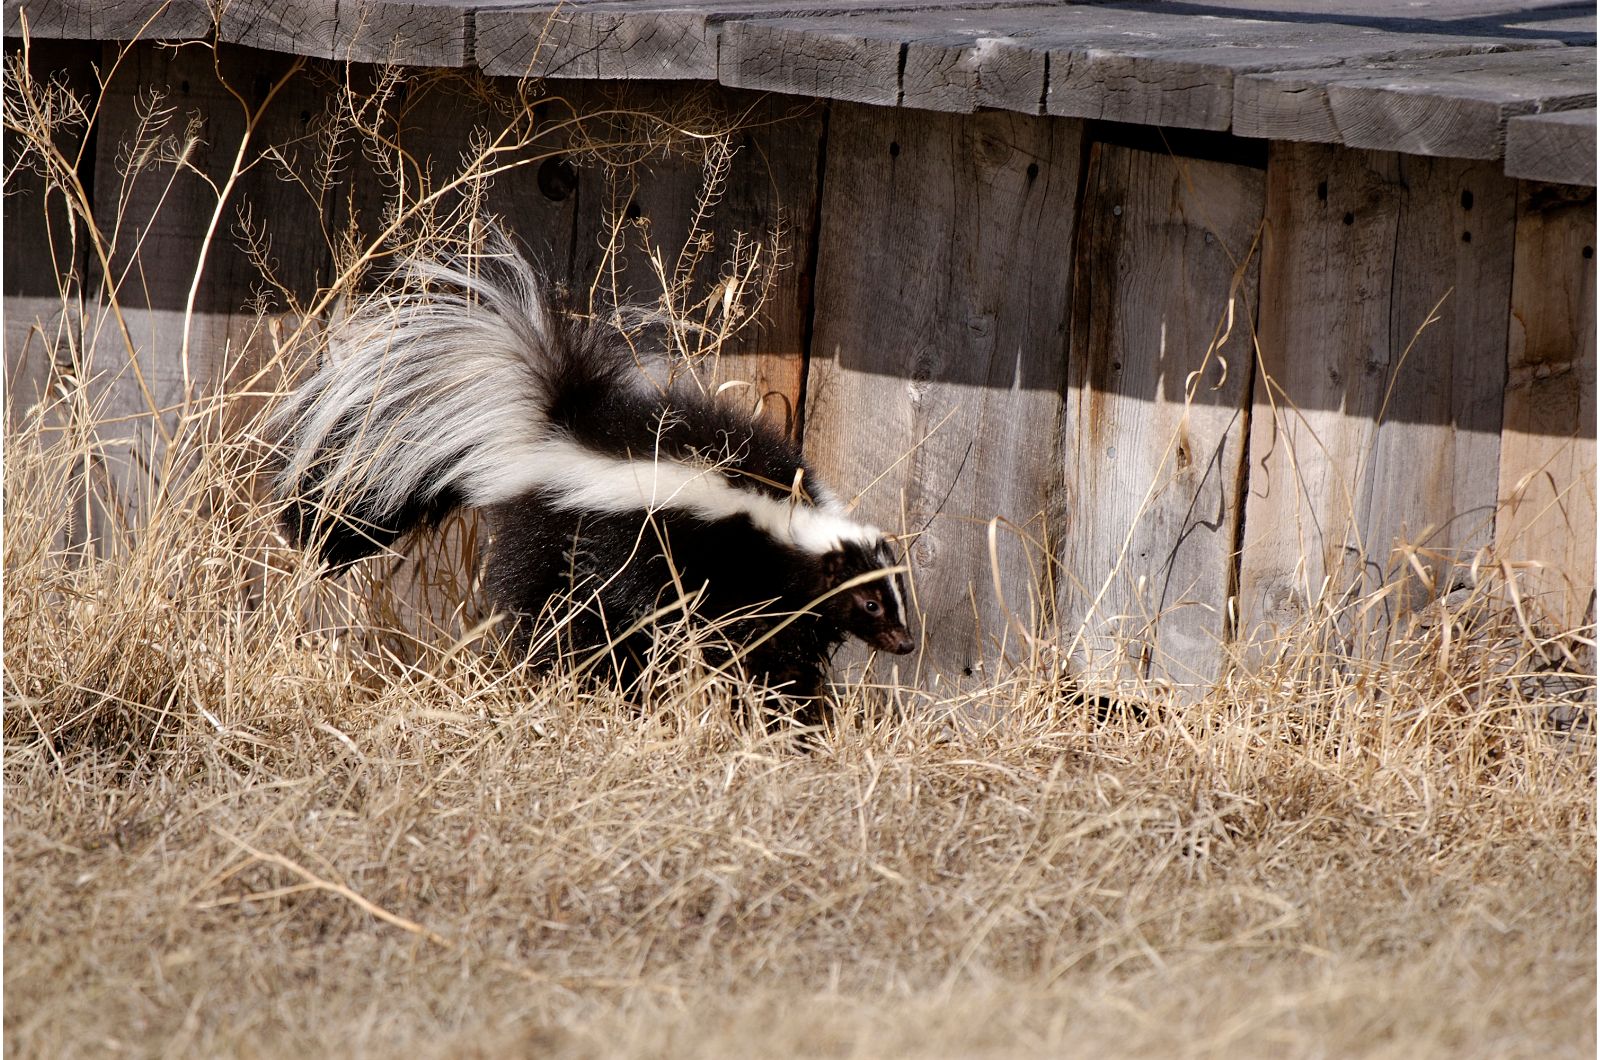 skunk next to wooden deck